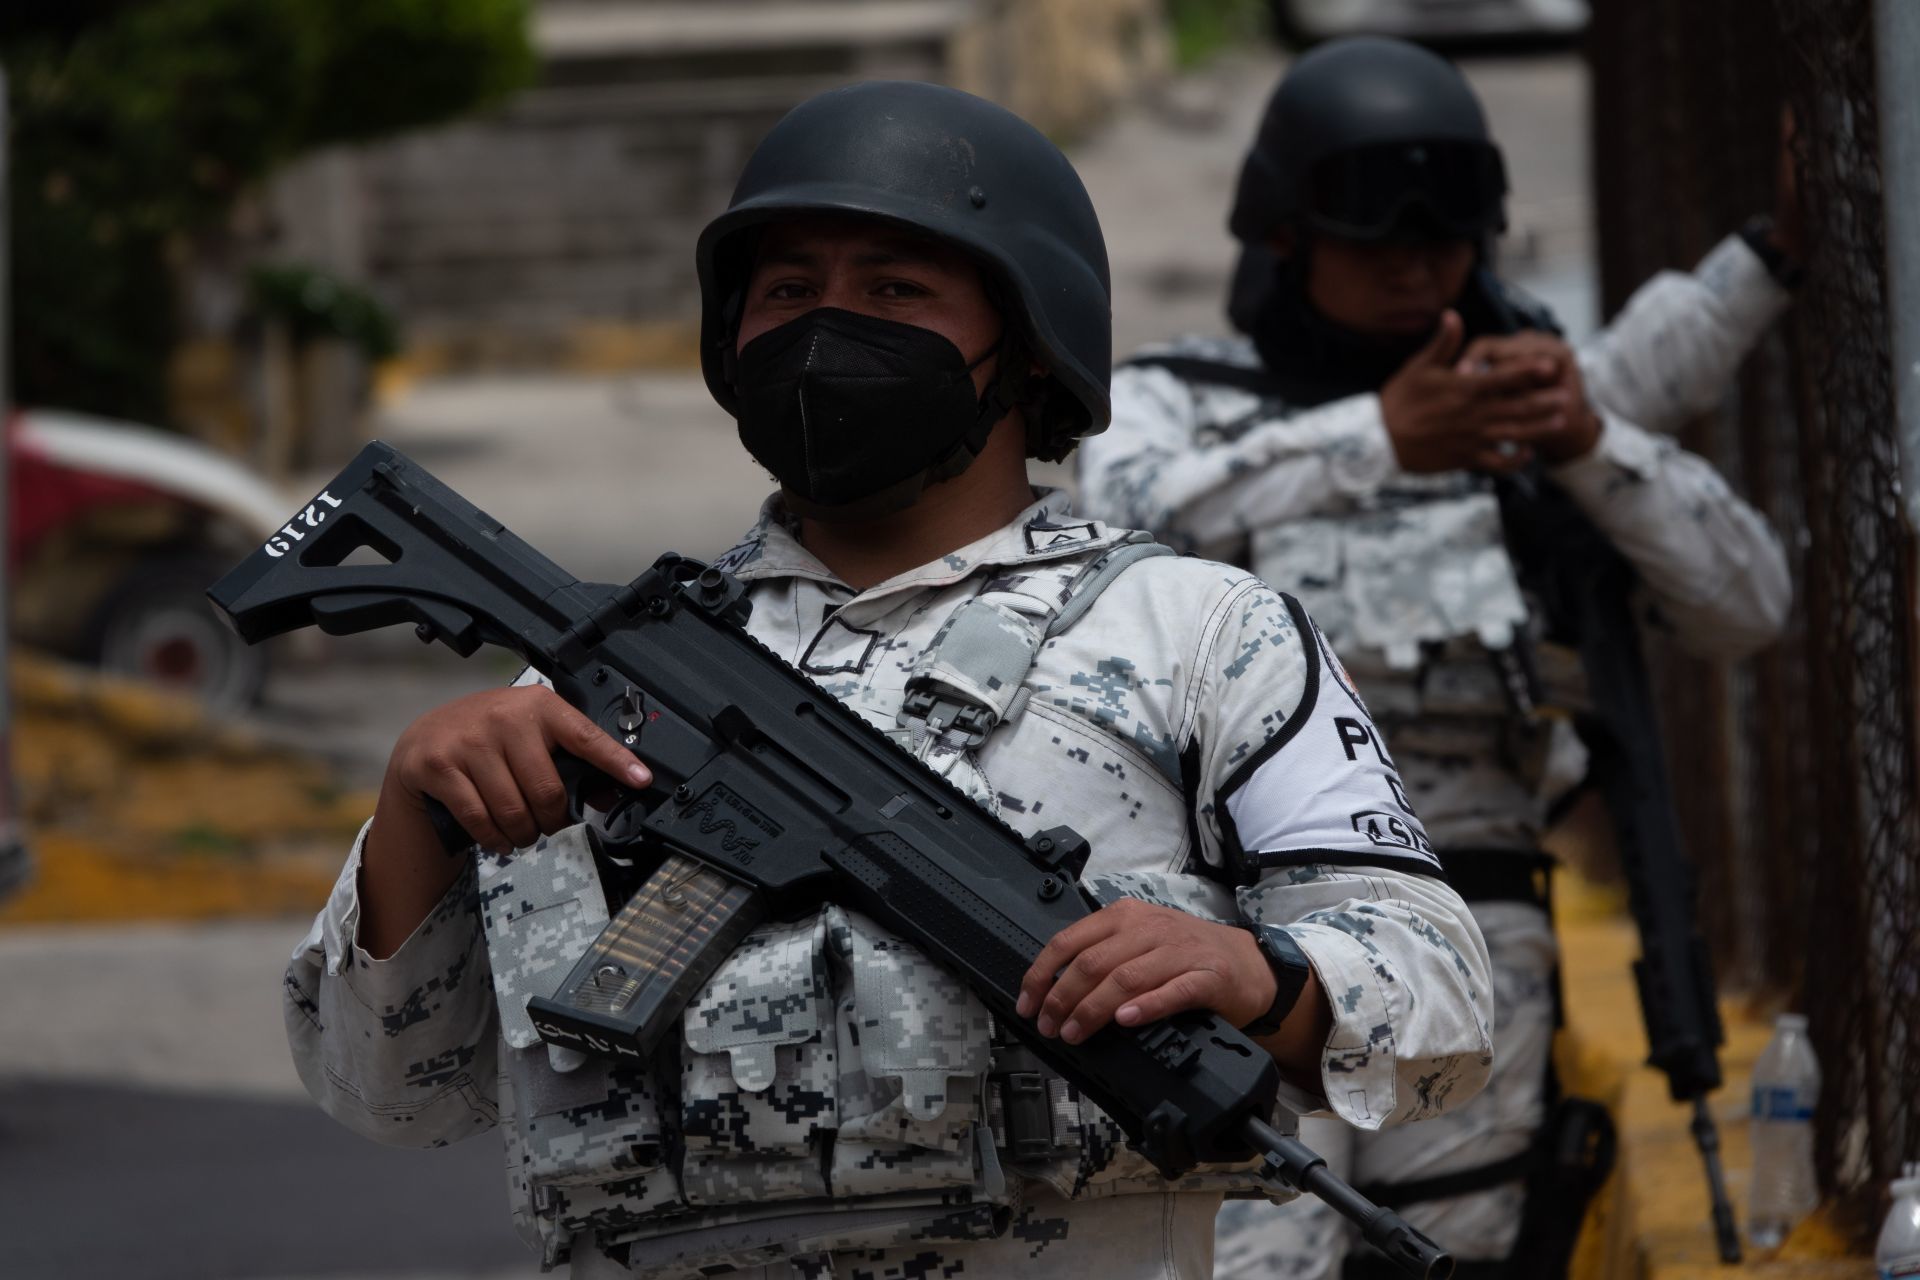 Ebrard emprendió una importante lucha contra el tráfico de armas

FOTO: GALO CAÑAS/CUARTOSCURO.COM